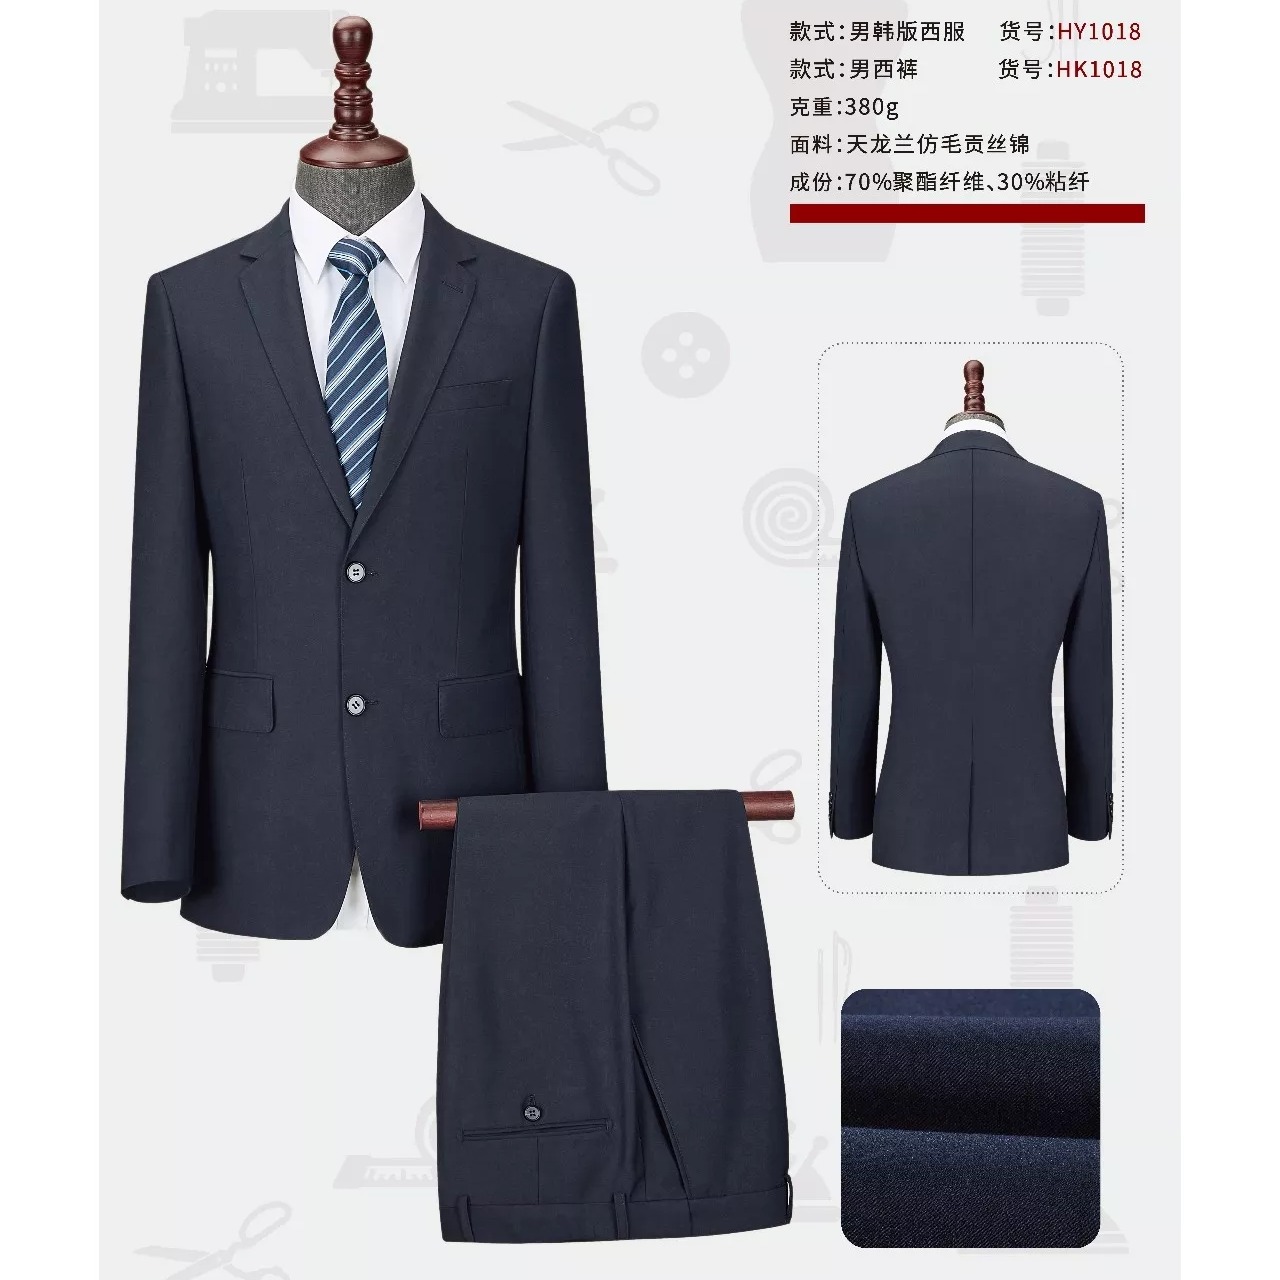 款式新颖 设计时尚 西安西服厂家定做 男式西服套装 西安职业西装1